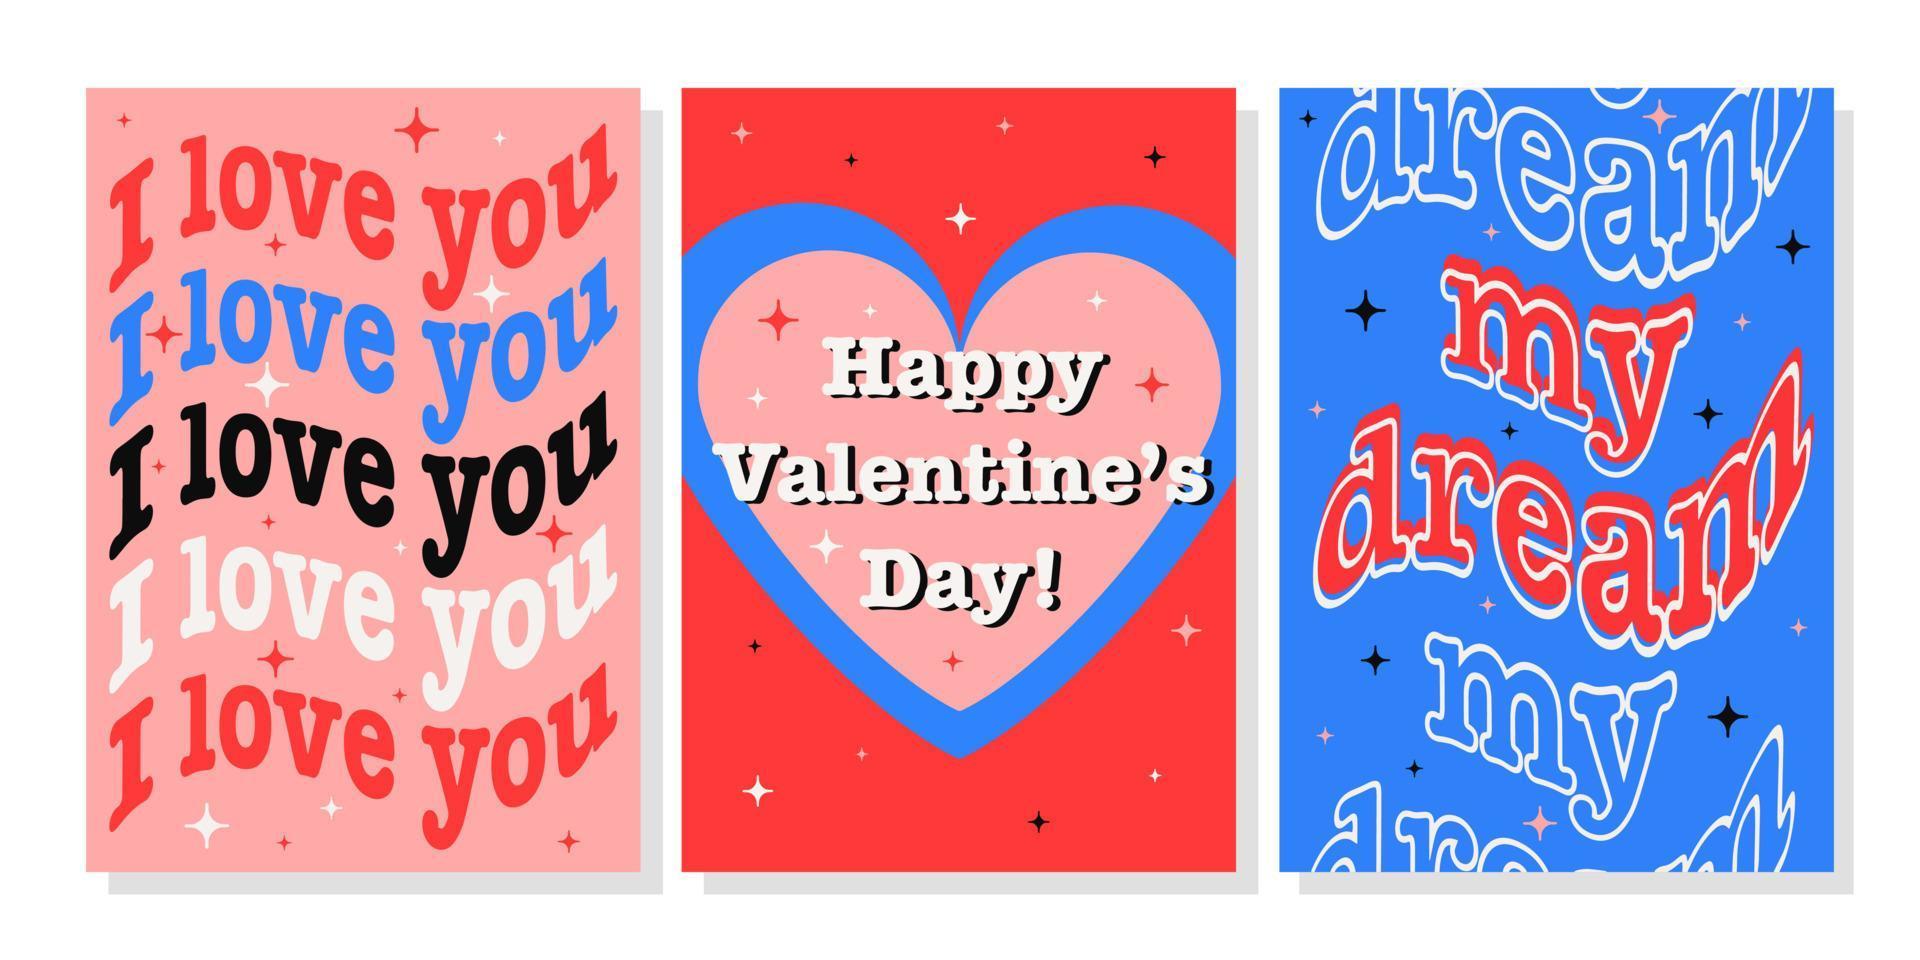 San Valentino giorno saluto carta impostare. mano disegnato di moda cartone animato cuore, amore scritta. vettore illustrazione